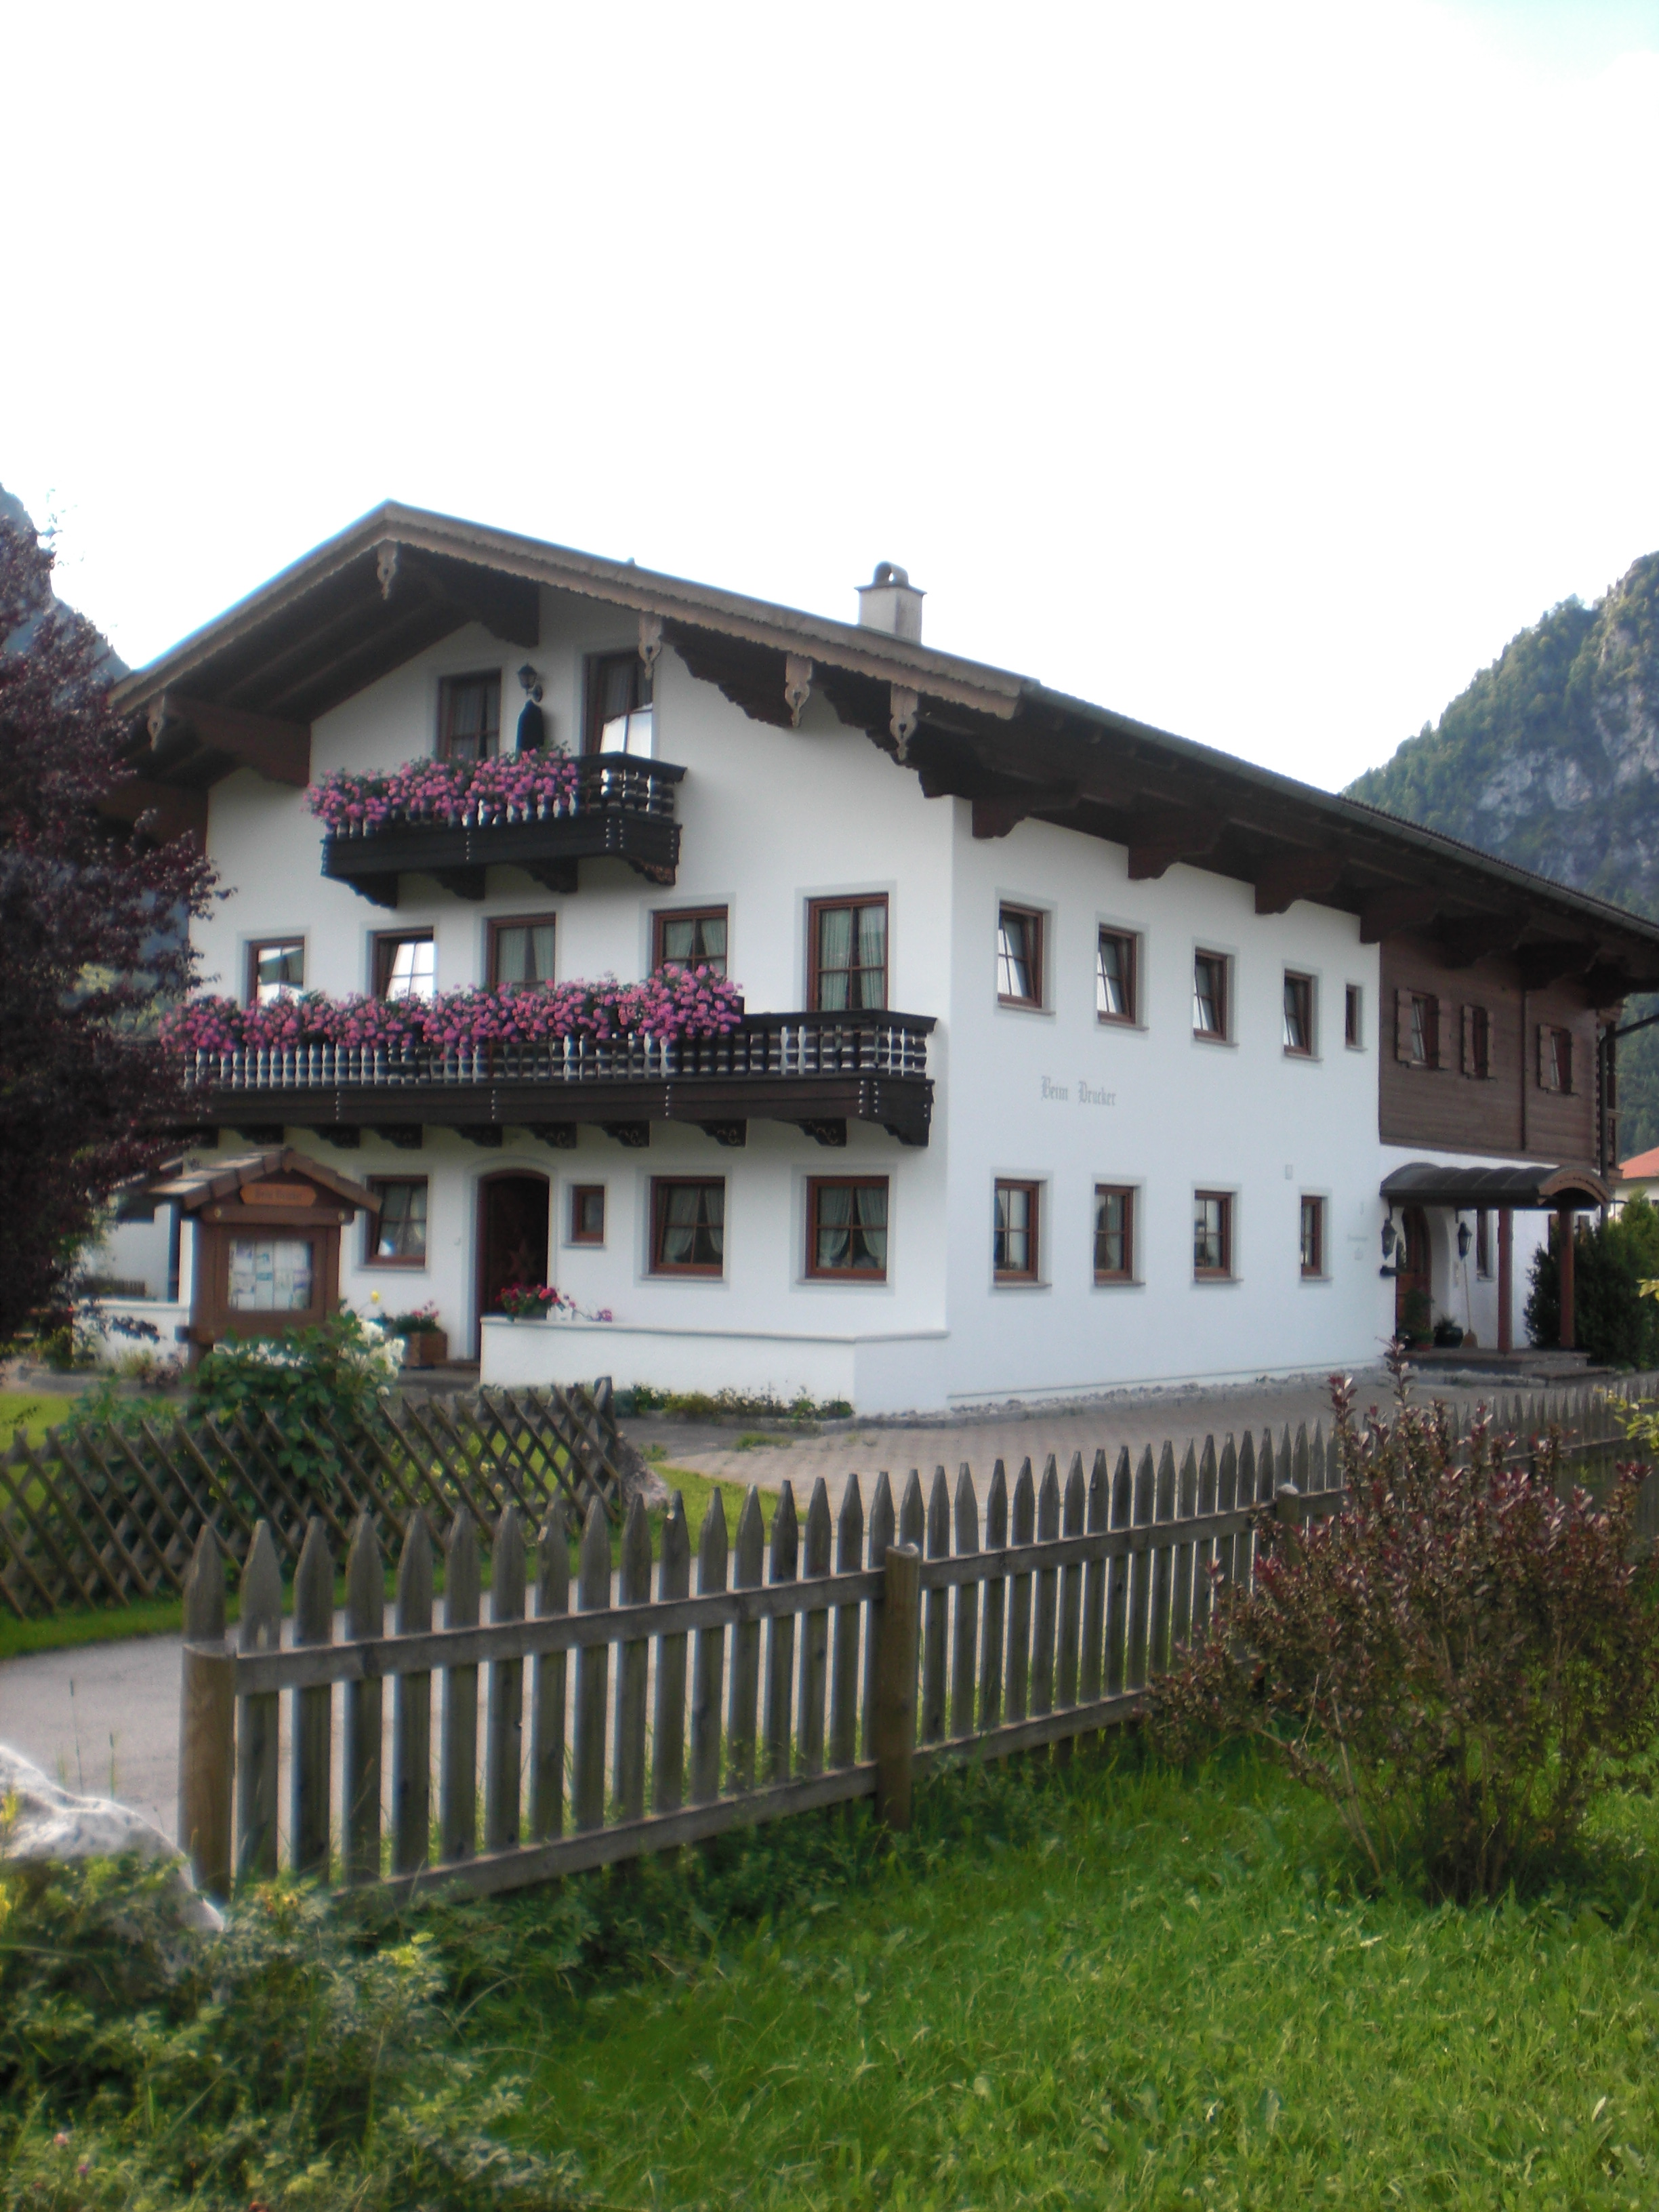 Gästehaus Beim Drucker - Chiemgau Karte (DE I Ferienwohnung in den Alpen